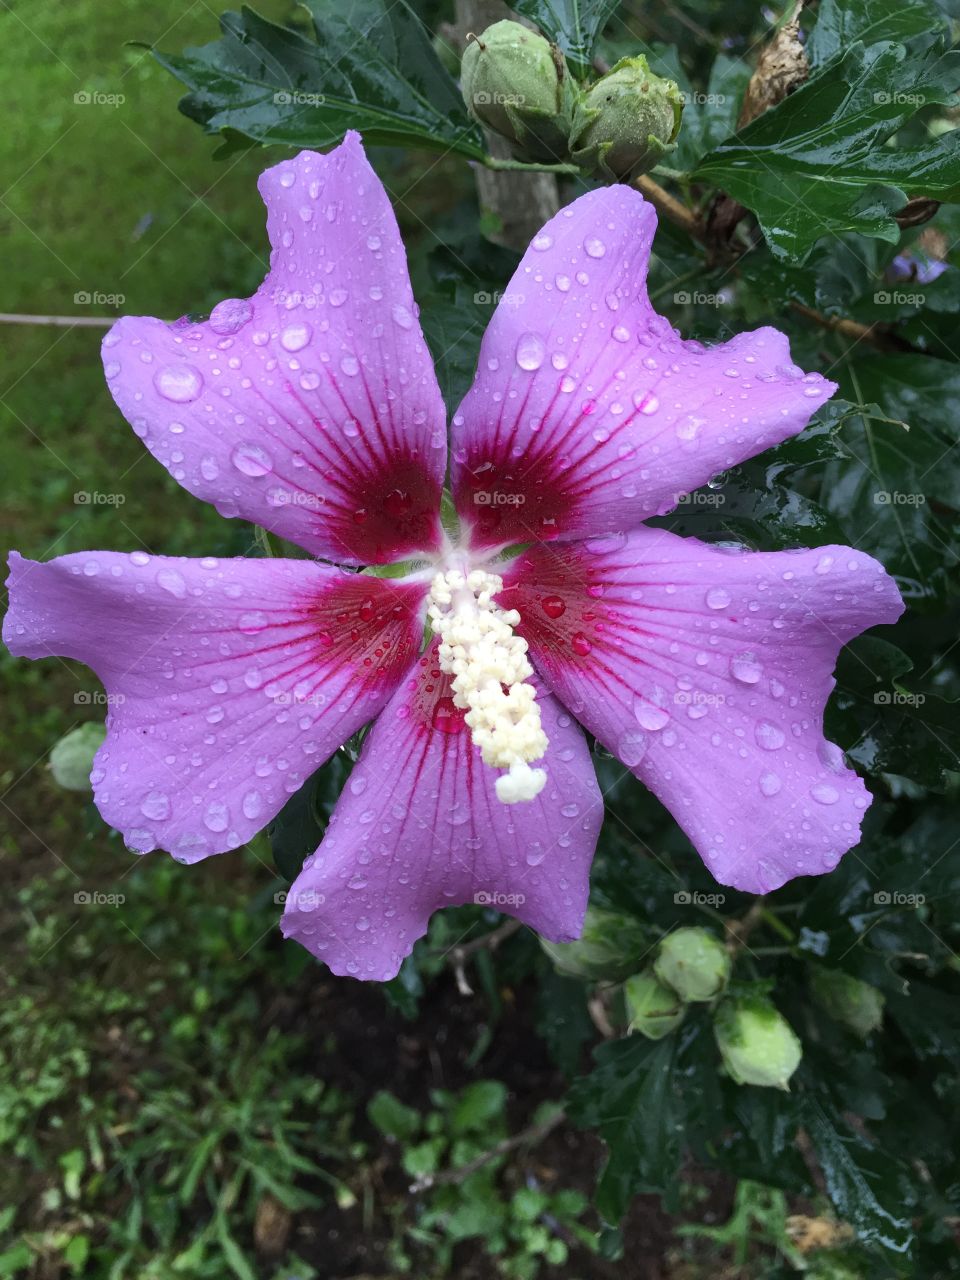 Rain drops on a purple flower